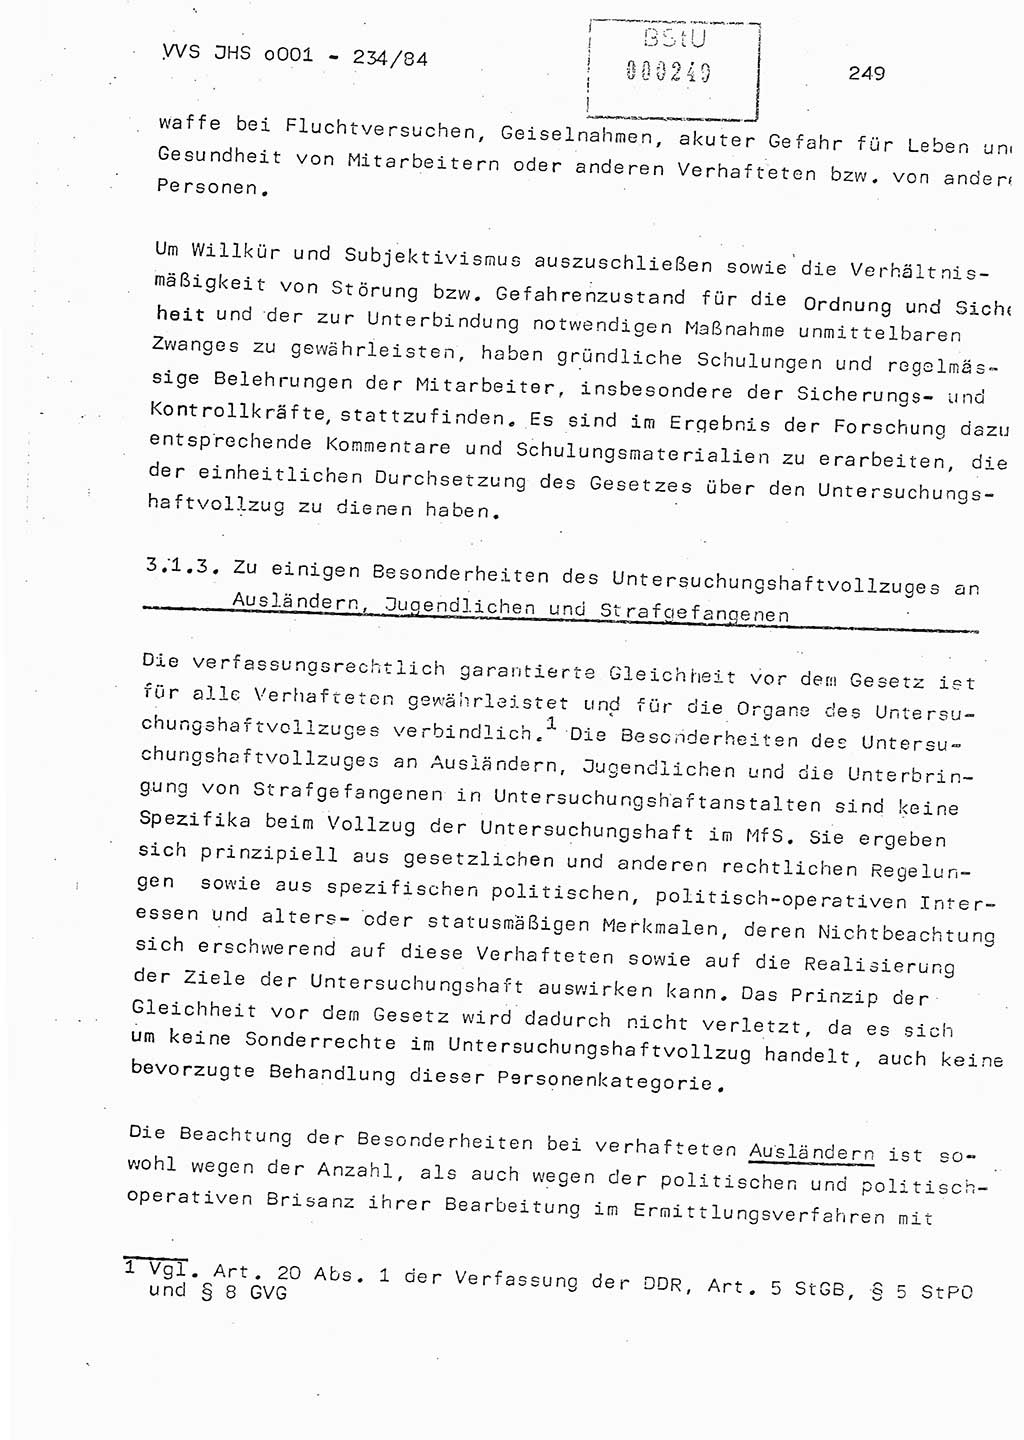 Dissertation Oberst Siegfried Rataizick (Abt. ⅩⅣ), Oberstleutnant Volkmar Heinz (Abt. ⅩⅣ), Oberstleutnant Werner Stein (HA Ⅸ), Hauptmann Heinz Conrad (JHS), Ministerium für Staatssicherheit (MfS) [Deutsche Demokratische Republik (DDR)], Juristische Hochschule (JHS), Vertrauliche Verschlußsache (VVS) o001-234/84, Potsdam 1984, Seite 249 (Diss. MfS DDR JHS VVS o001-234/84 1984, S. 249)